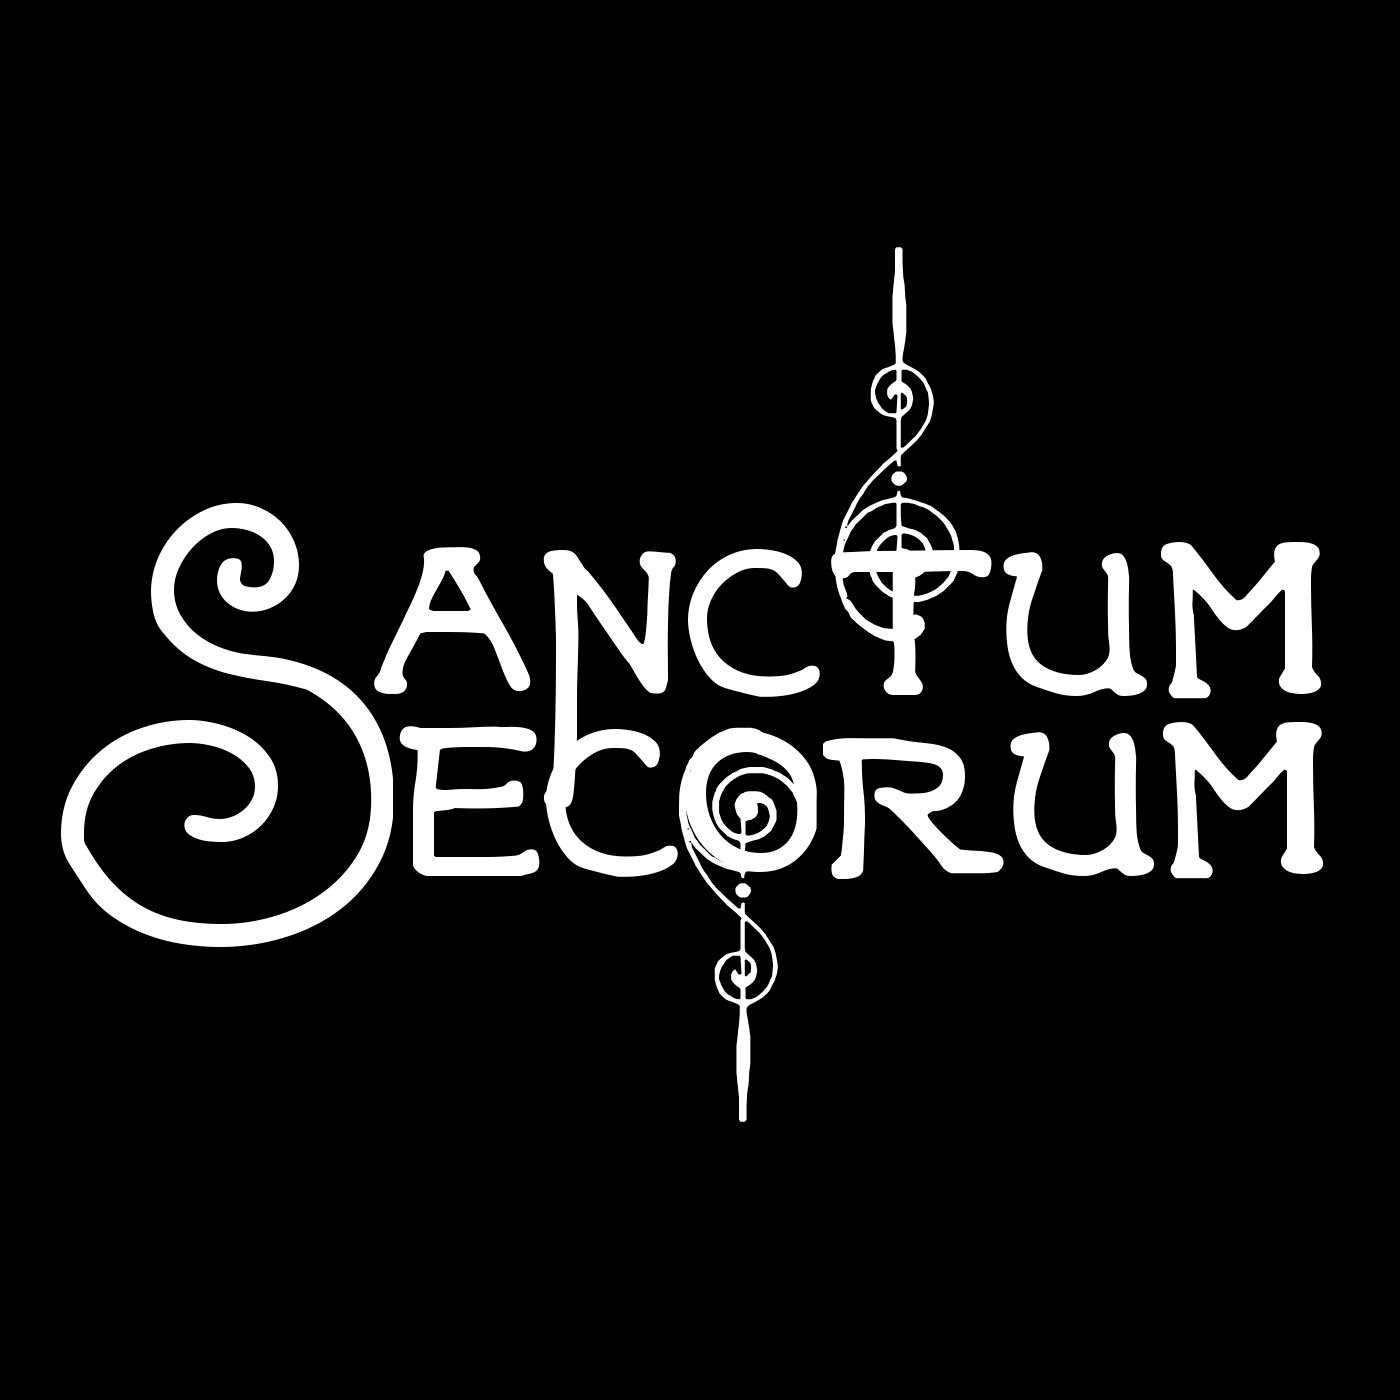 Sanctum Secorum #46 - The Dead Birds